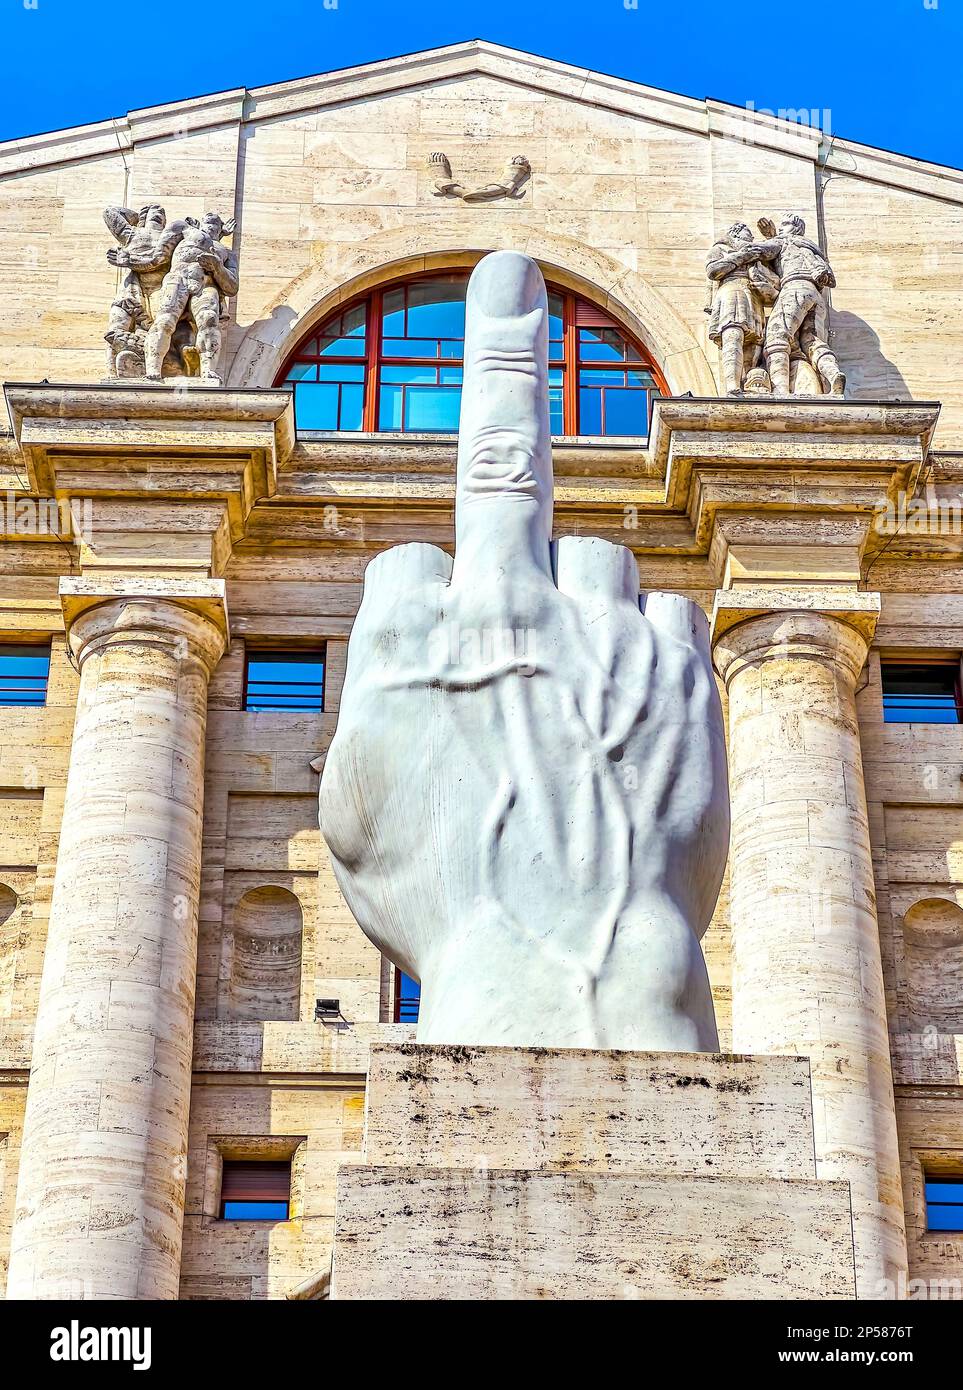 MAILAND, ITALIEN - 11. APRIL 2022: Die moderne Kultur L.O.V.E. oder Il Dito (der Finger) von Maurizio Cattelan auf der Piazza Affari am 11. April in Mailand, Italien Stockfoto